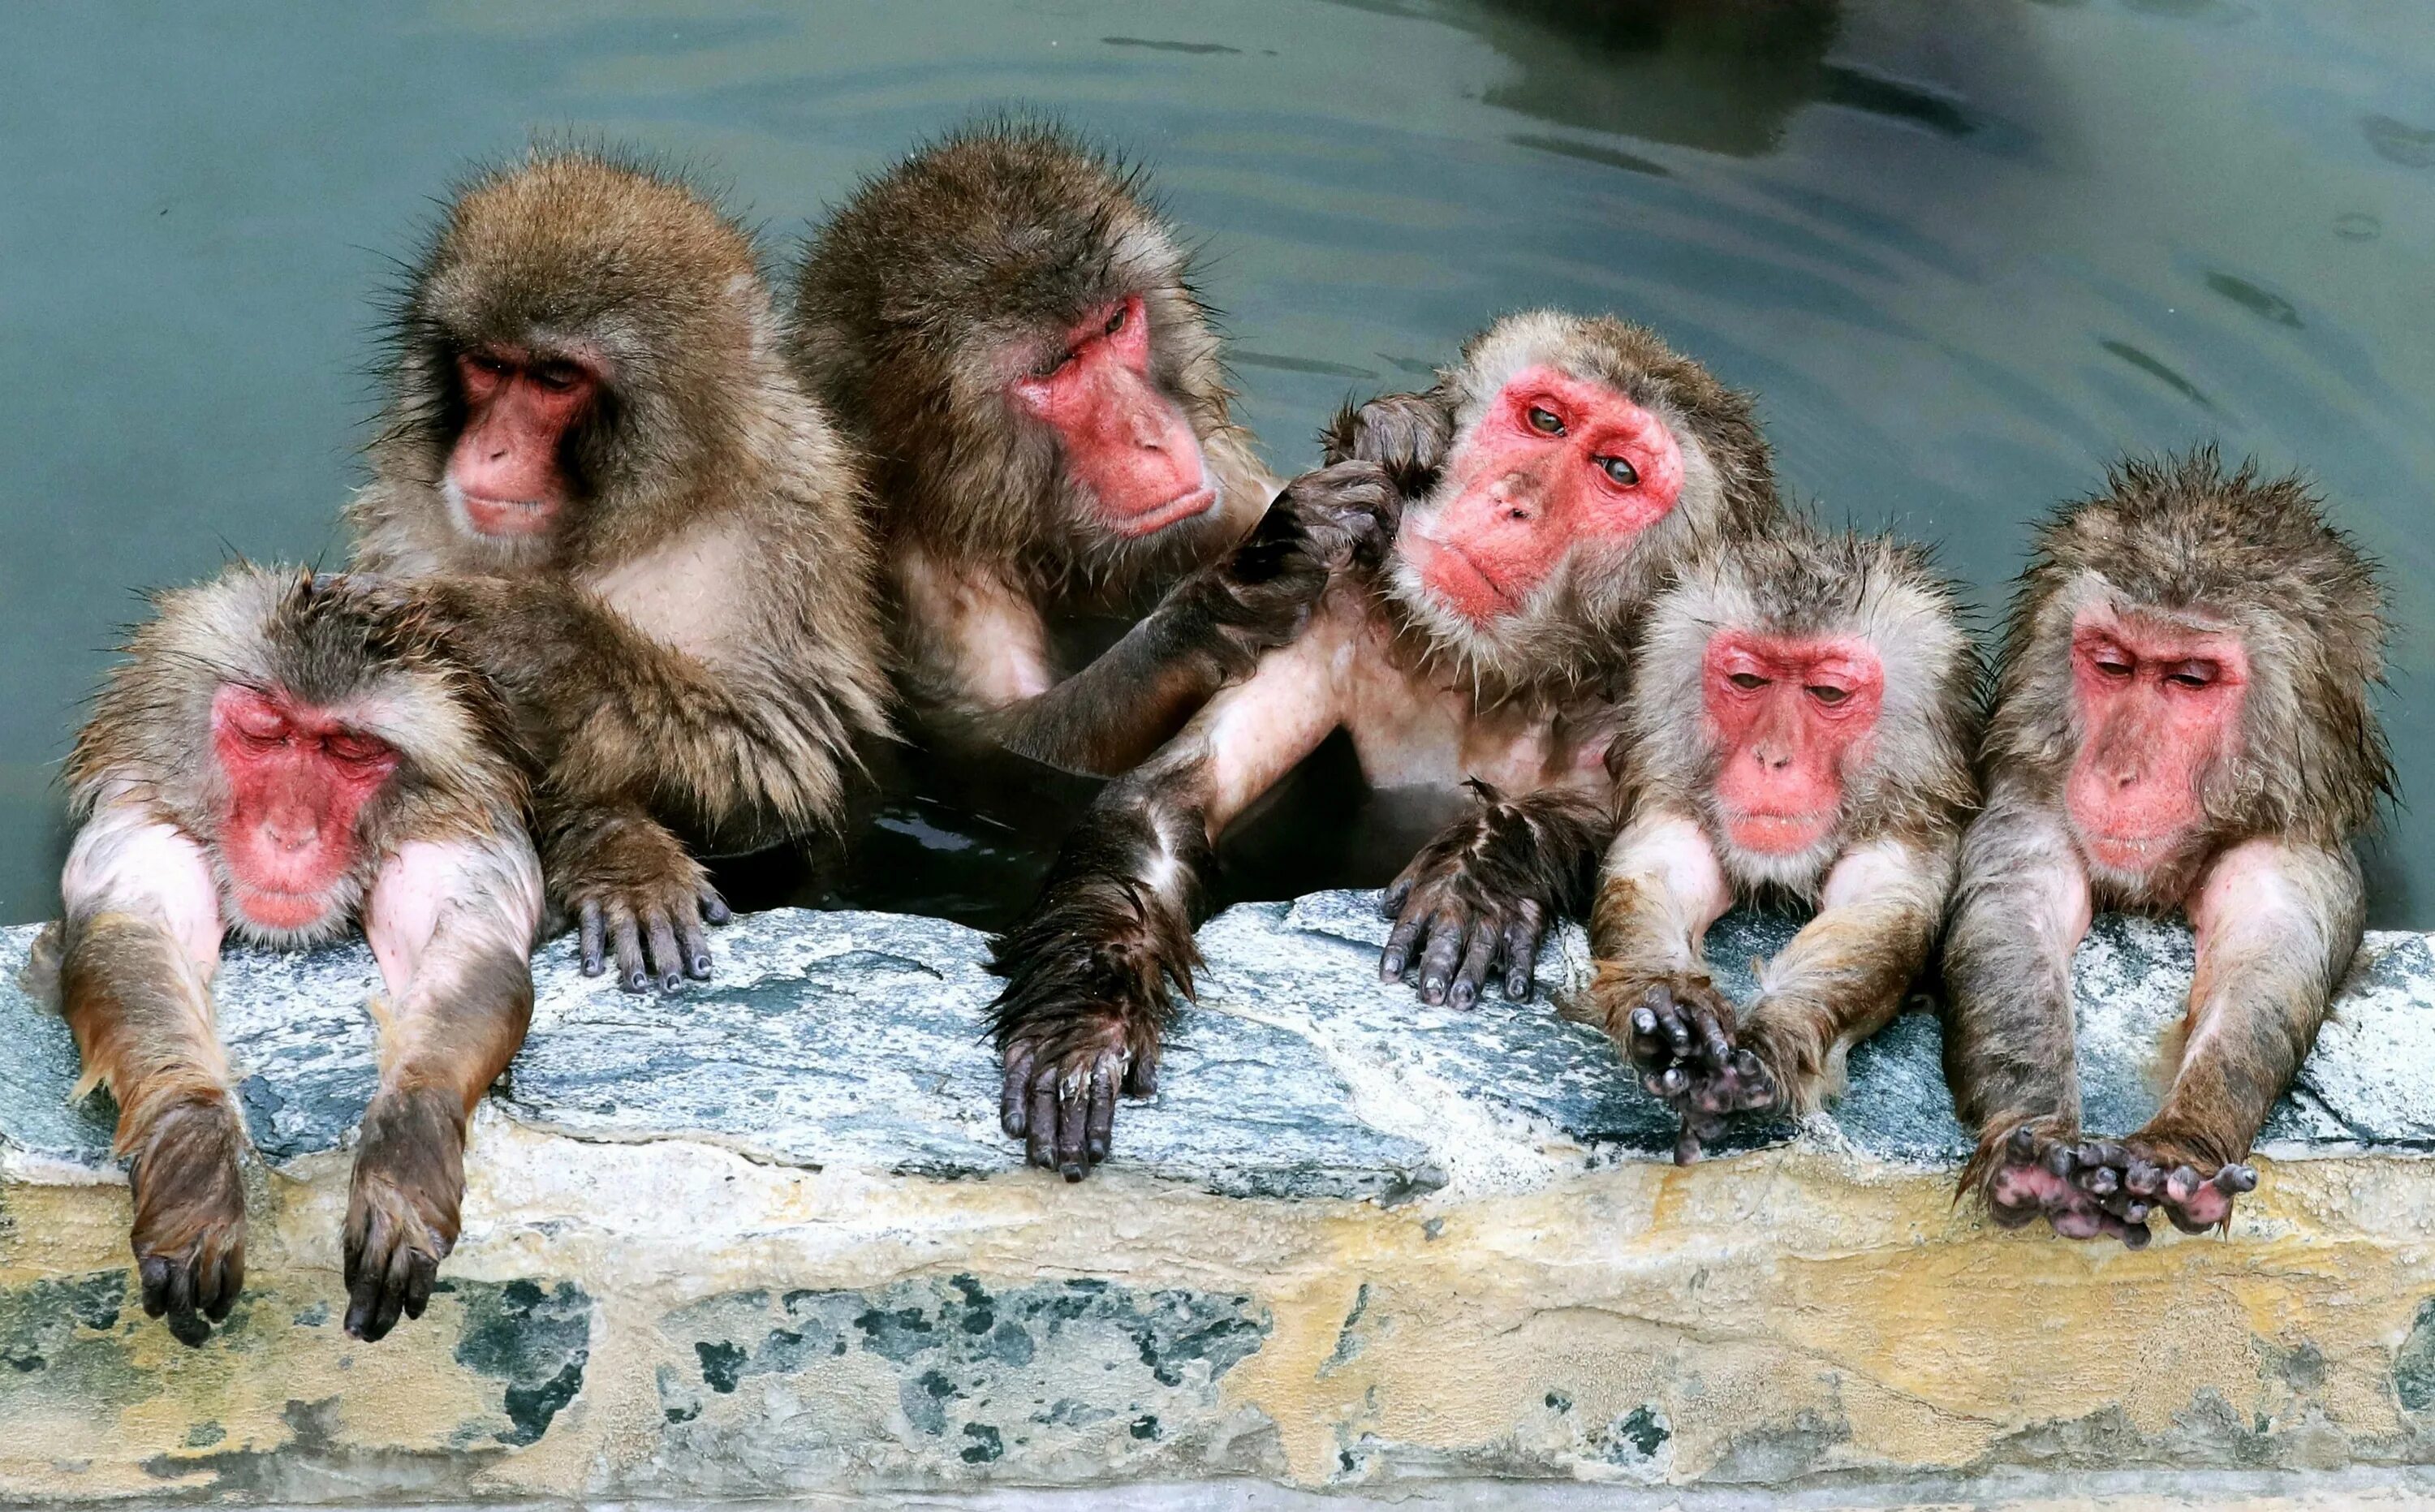 Горячие источники Япония макаки. Японские макаки в теплых источниках. Обезьяны в термальных источниках Японии. Японские обезьяны.